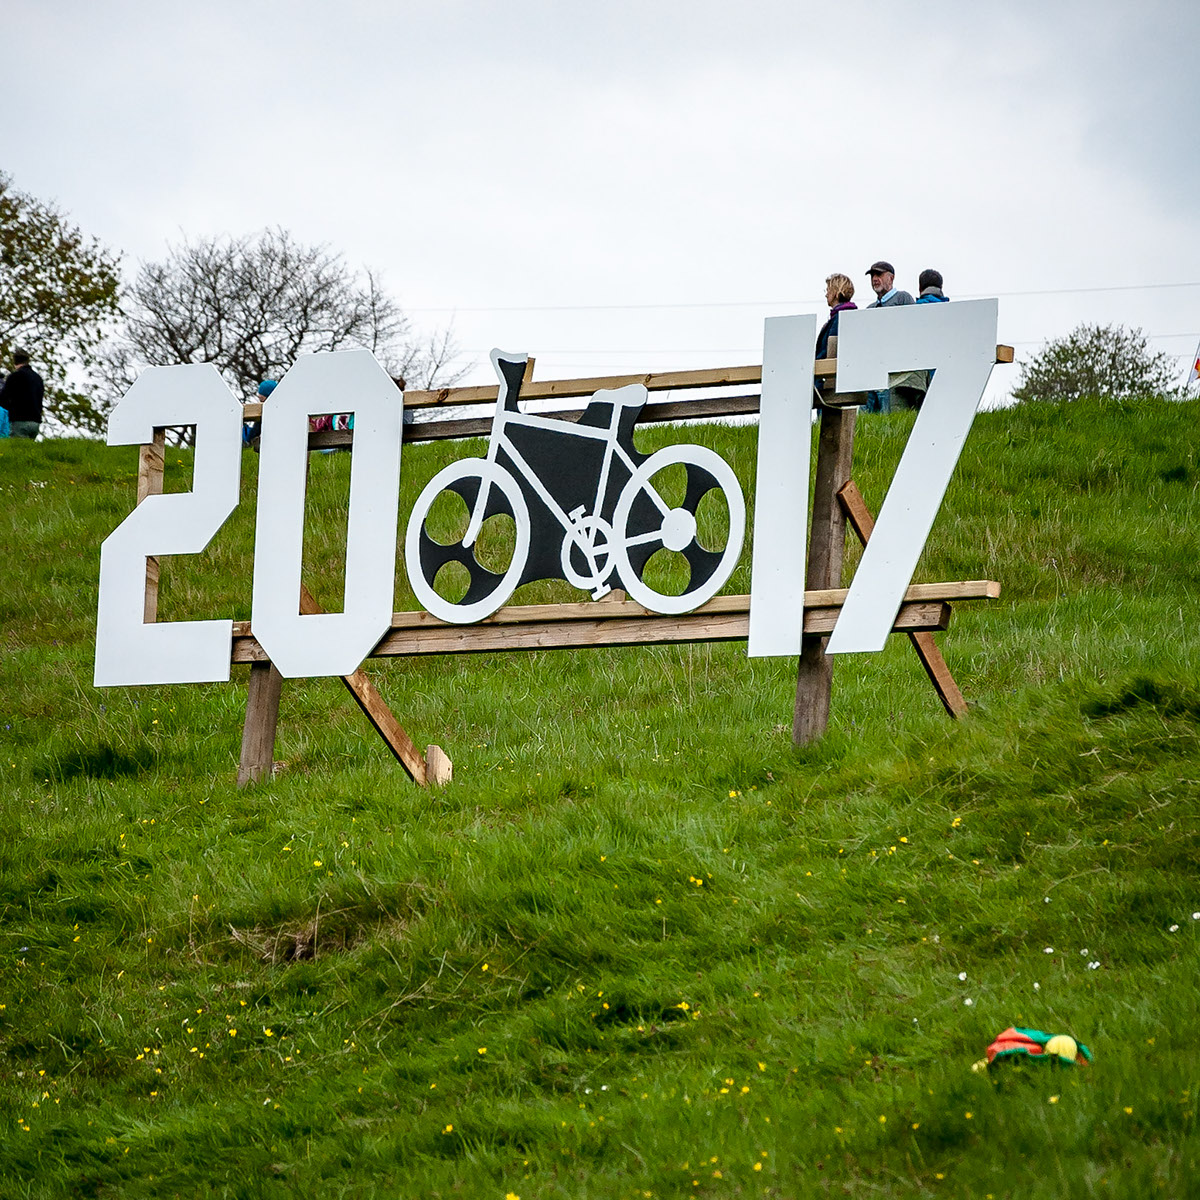 Adobe Portfolio race Cycling tour de yorkshire yorkshire sport tdy tourdeyorkshire Competition countryside Landscape